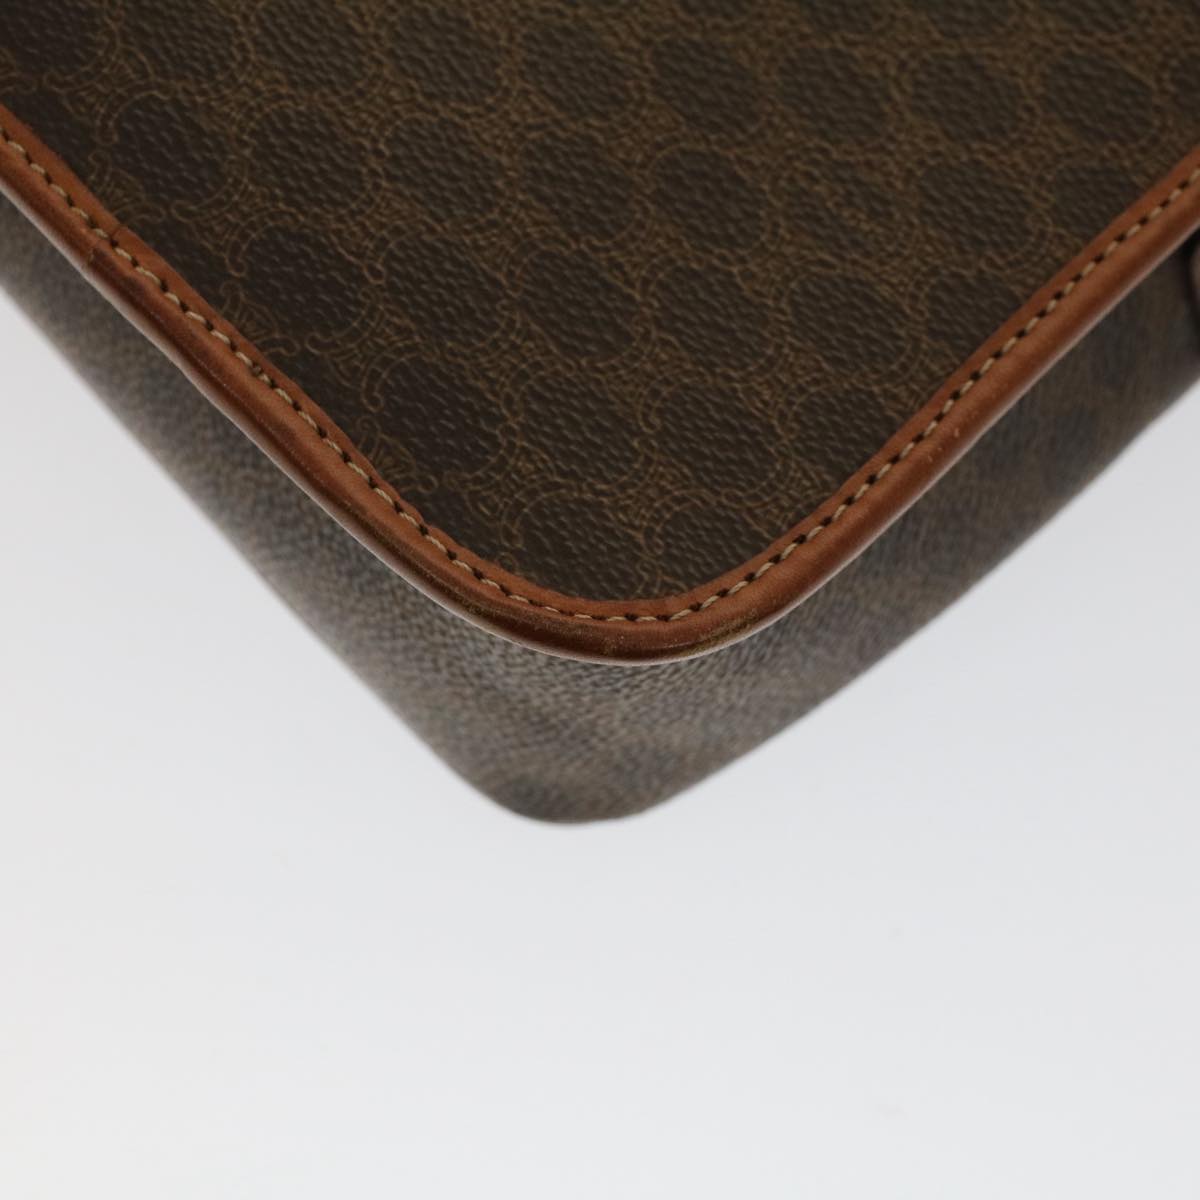 CELINE Macadam Canvas Shoulder Bag PVC Leather Brown Auth 50775